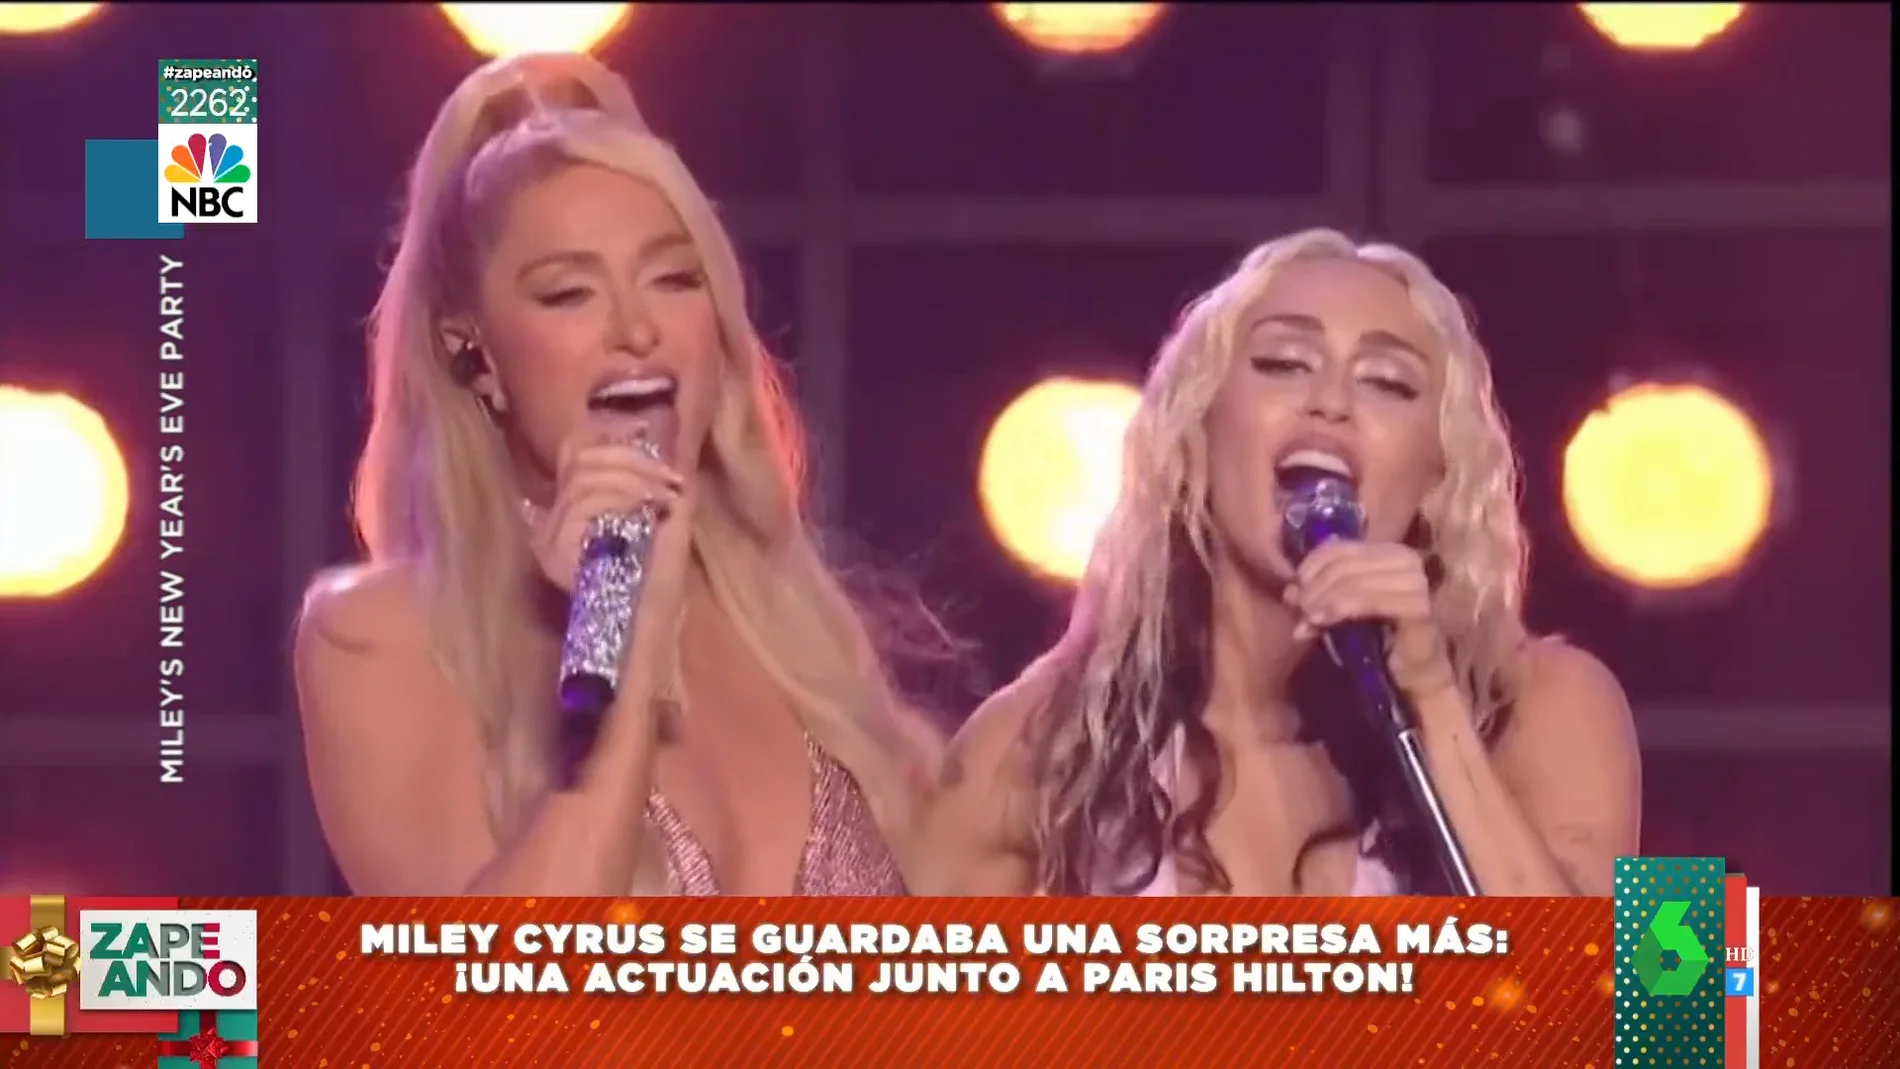 El espectacular concierto de fin de año de Miley Cyrus con Dolly Parton y Paris Hilton 